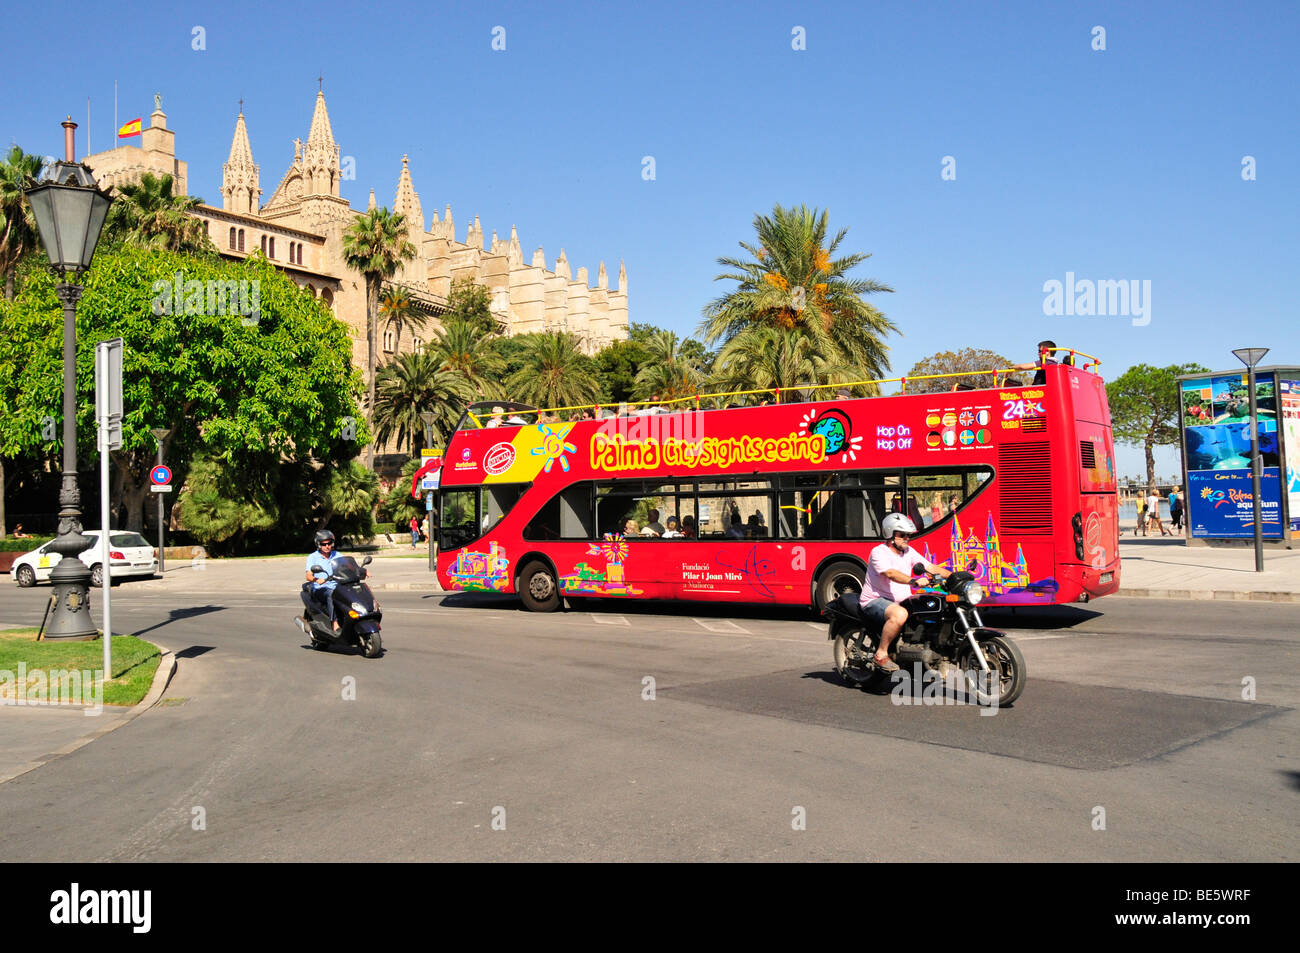 Bus touristique dans le centre historique de Palma de Majorque, Majorque, Îles Baléares, Espagne, Europe Banque D'Images